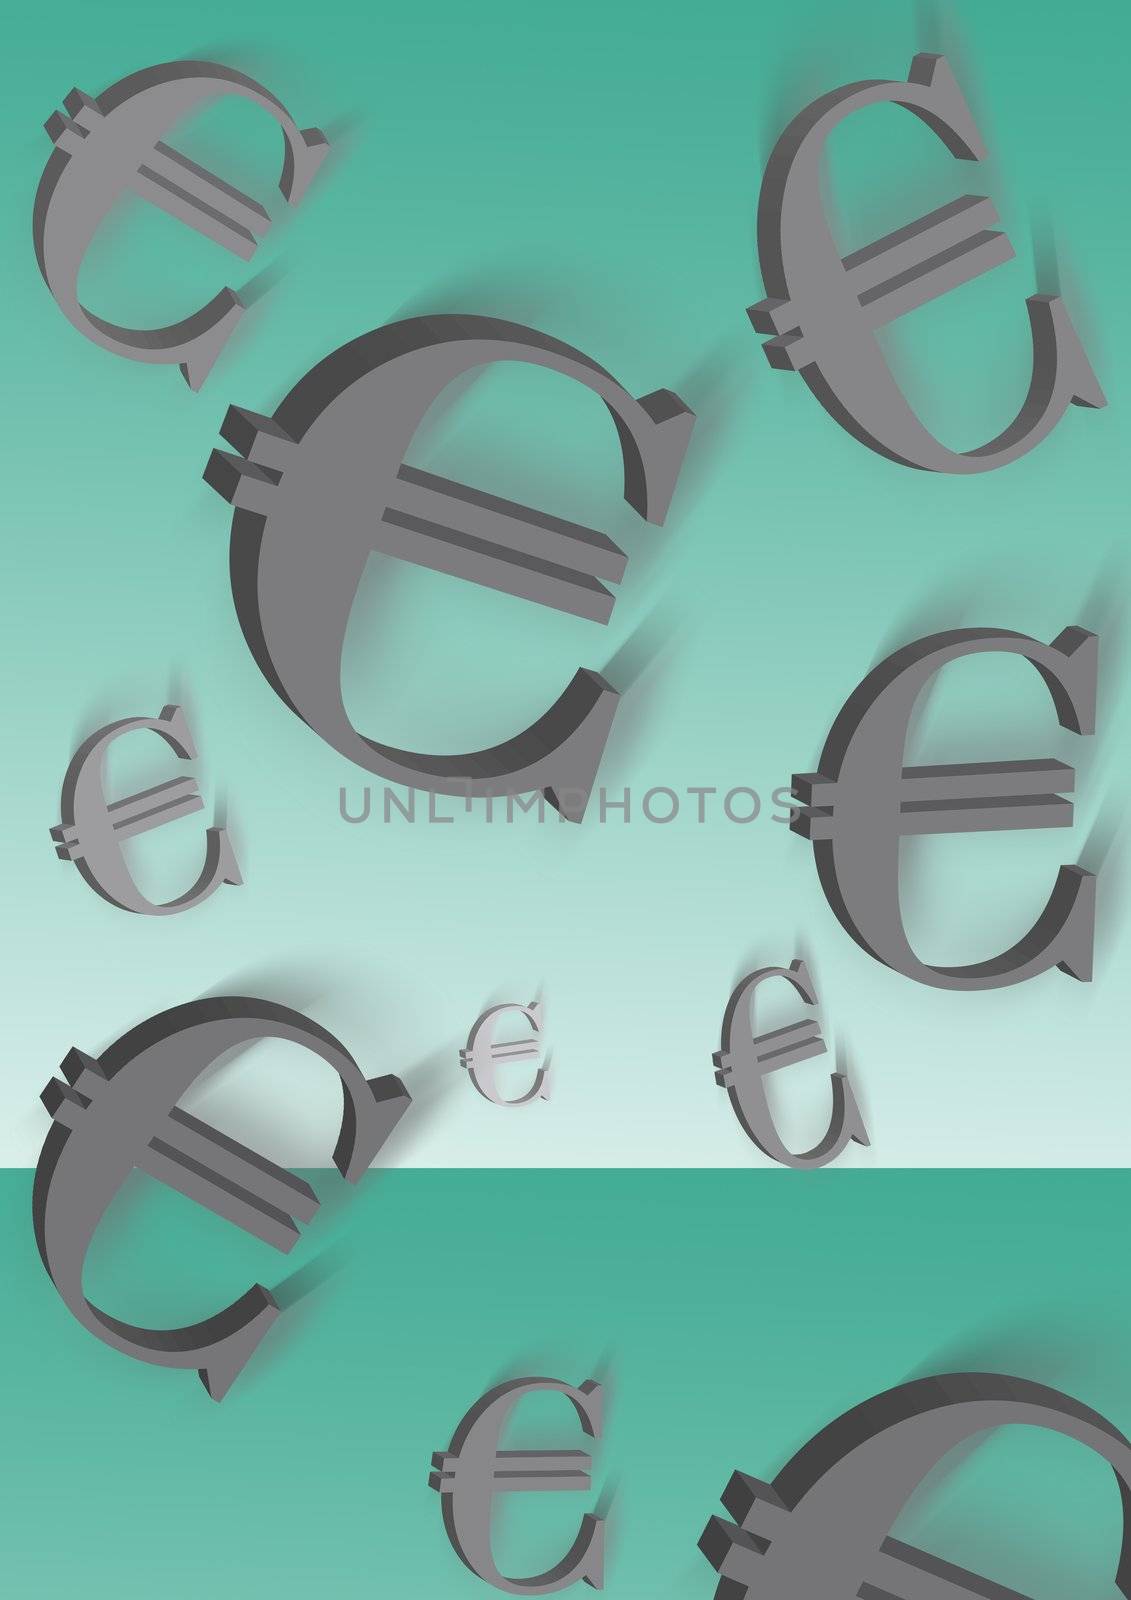 evro by Kuzma